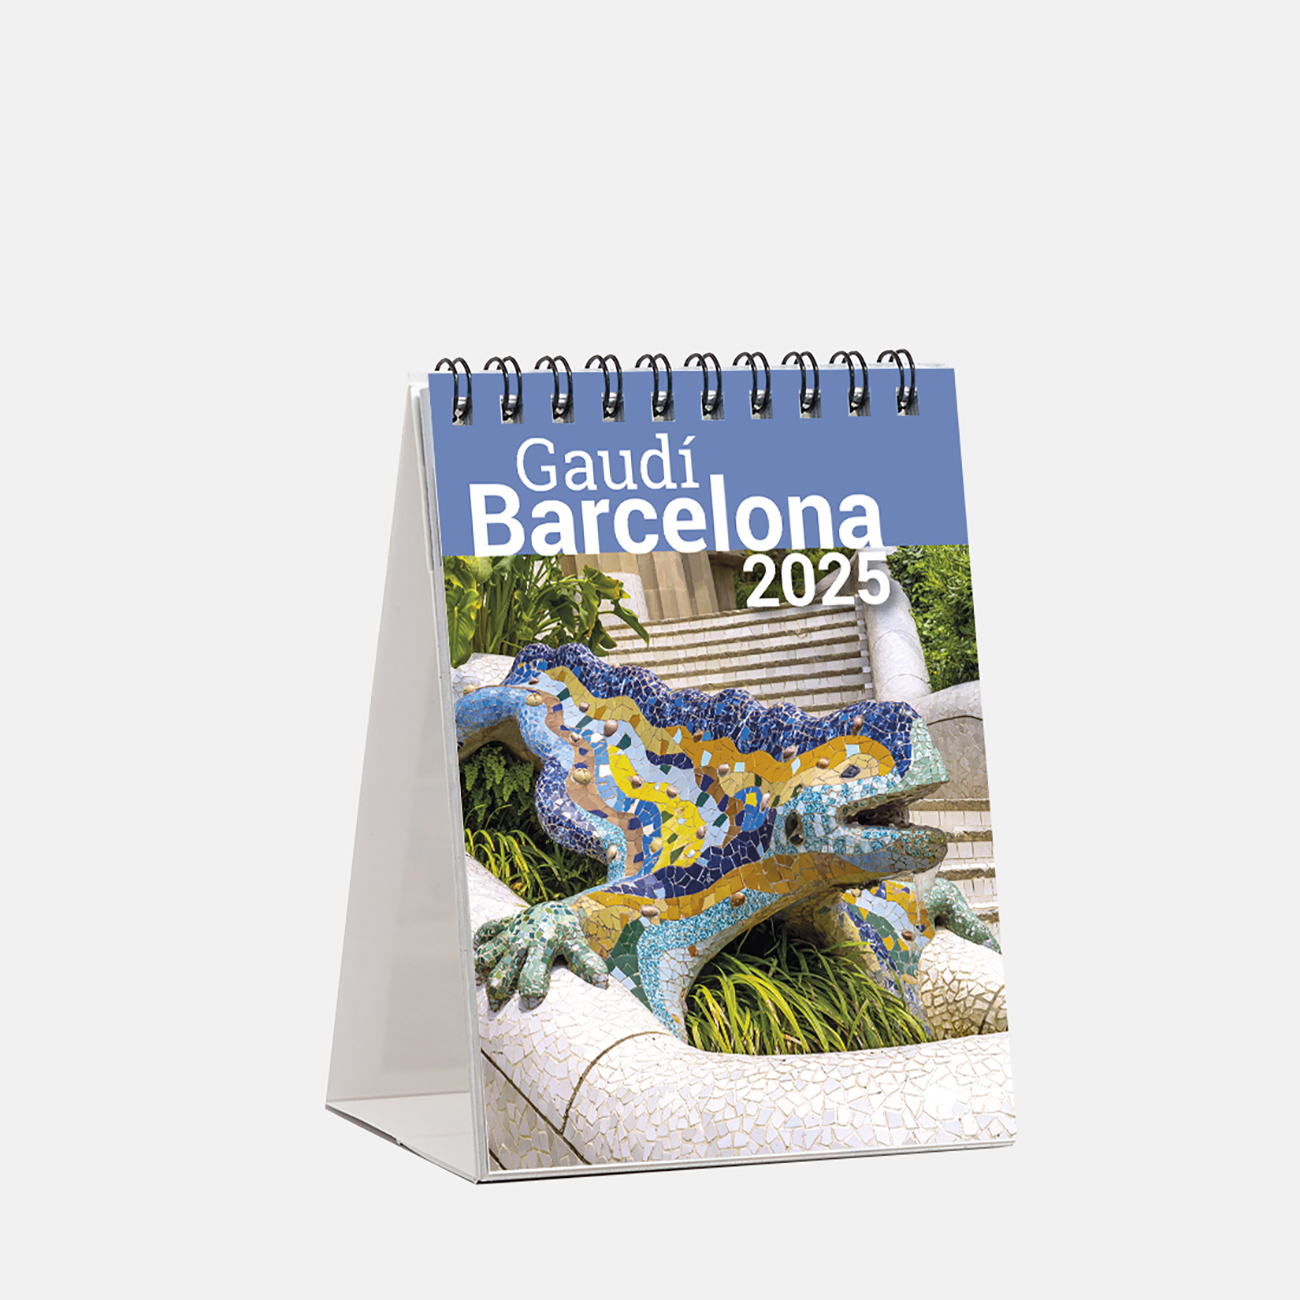 Calendario 2025 Gaudí sm25g1 calendario mini 2025 gaudi